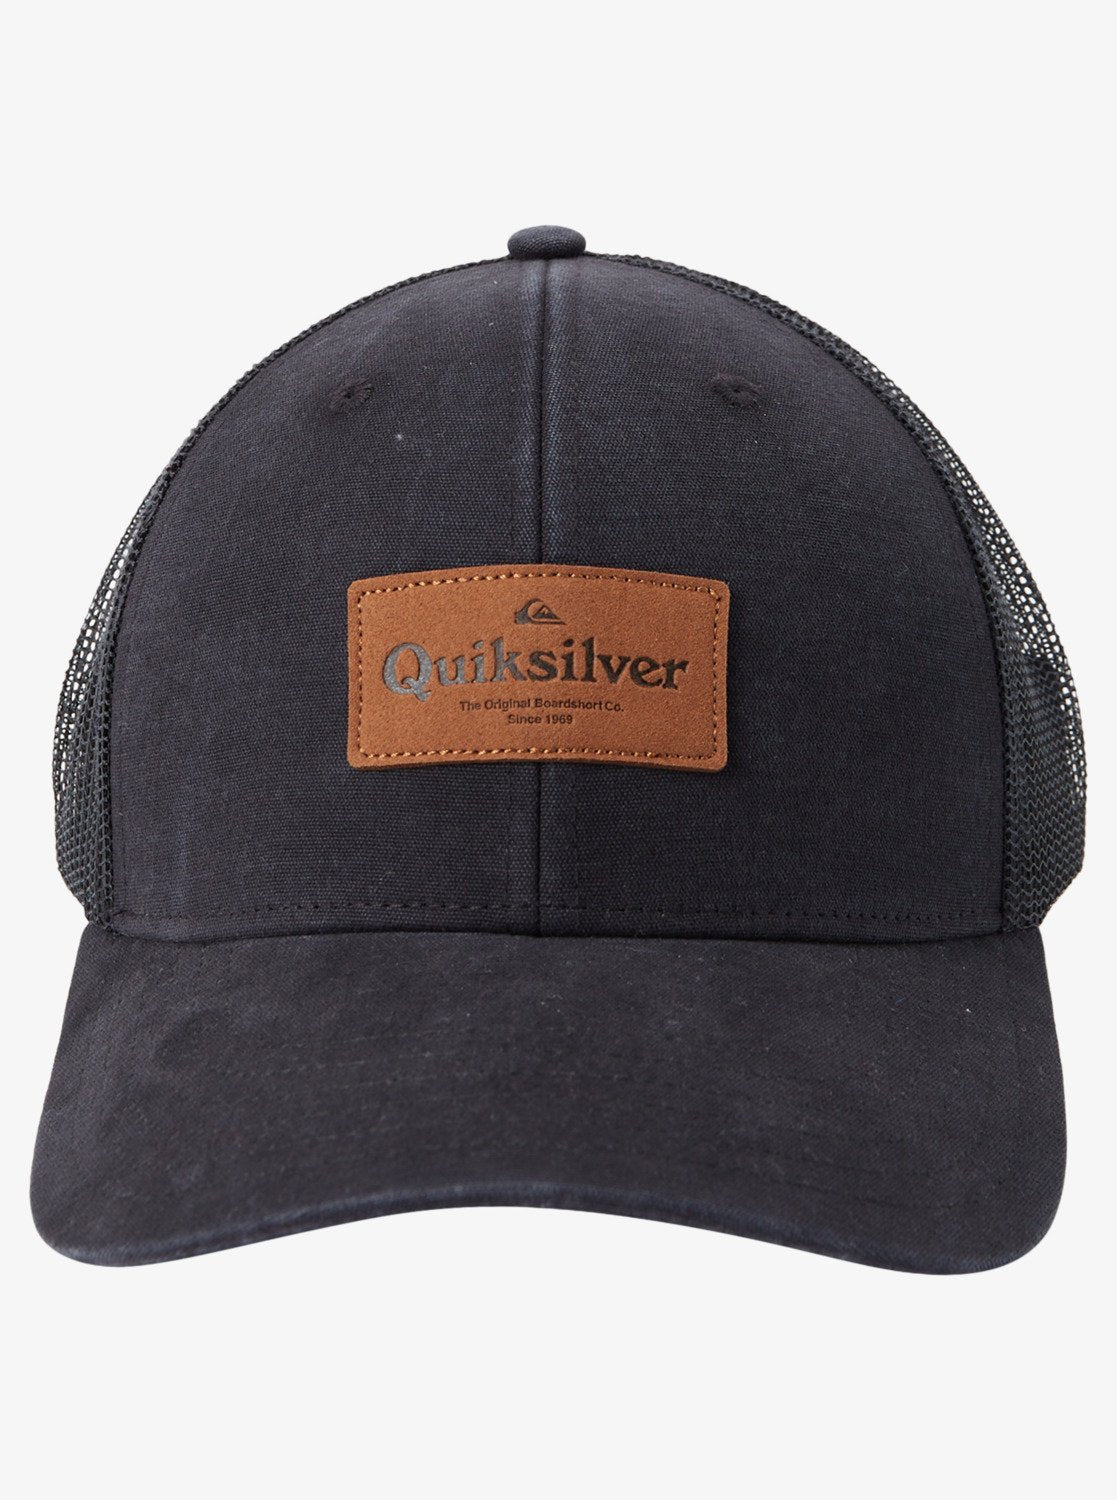 Quiksilver Mens Reek Easy - Mesh Trucker Hat